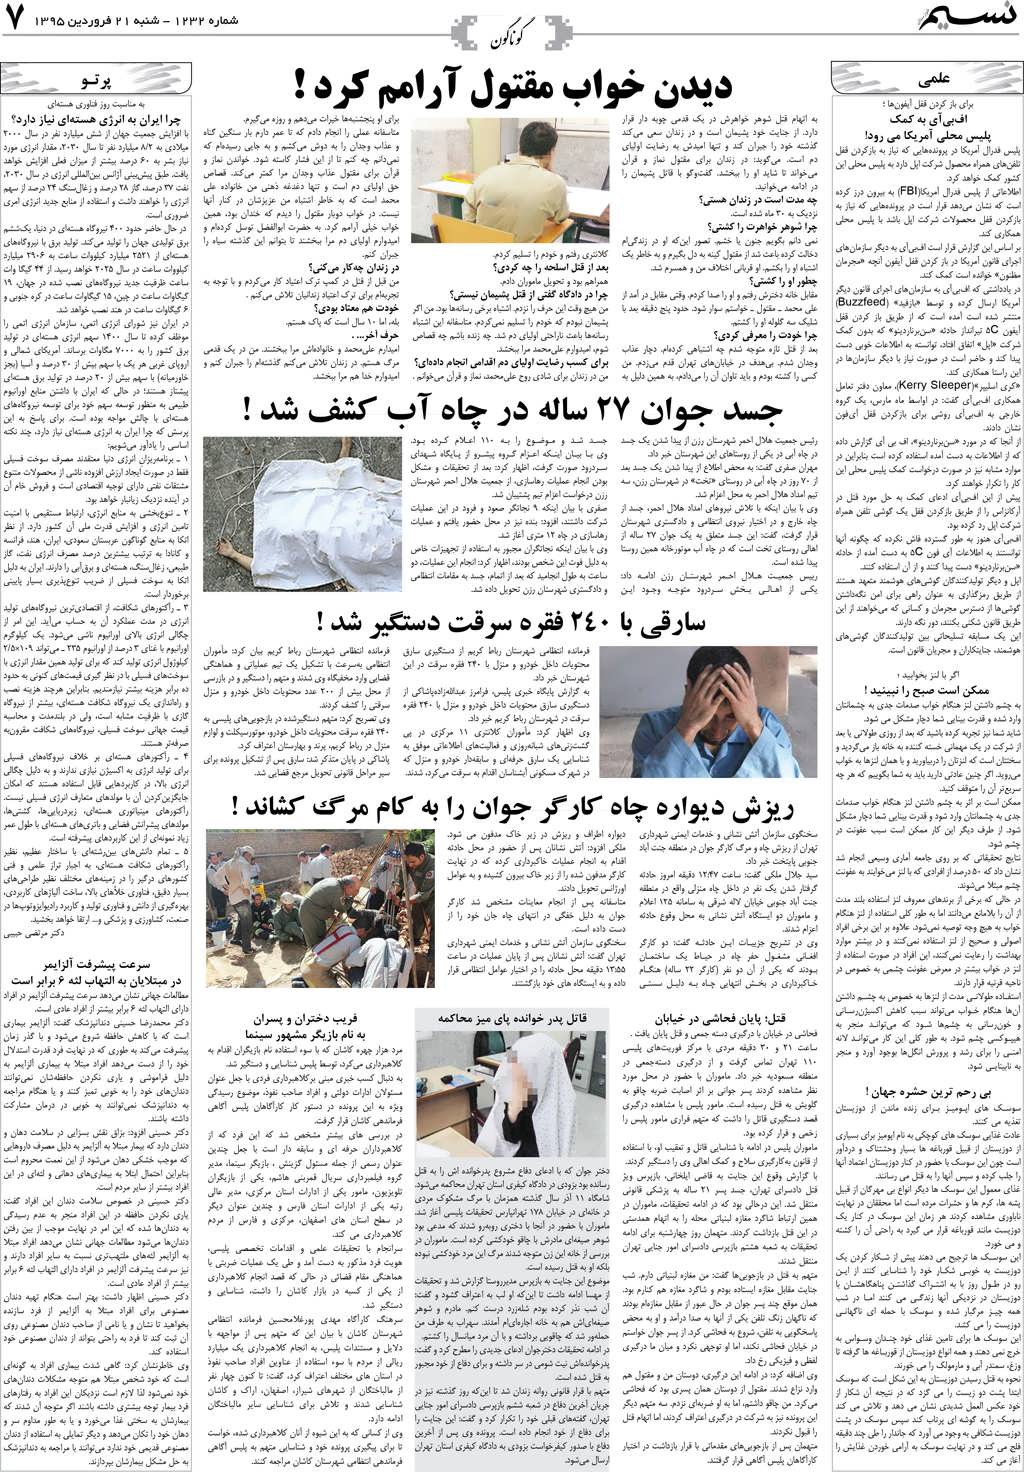 صفحه گوناگون روزنامه نسیم شماره 1232